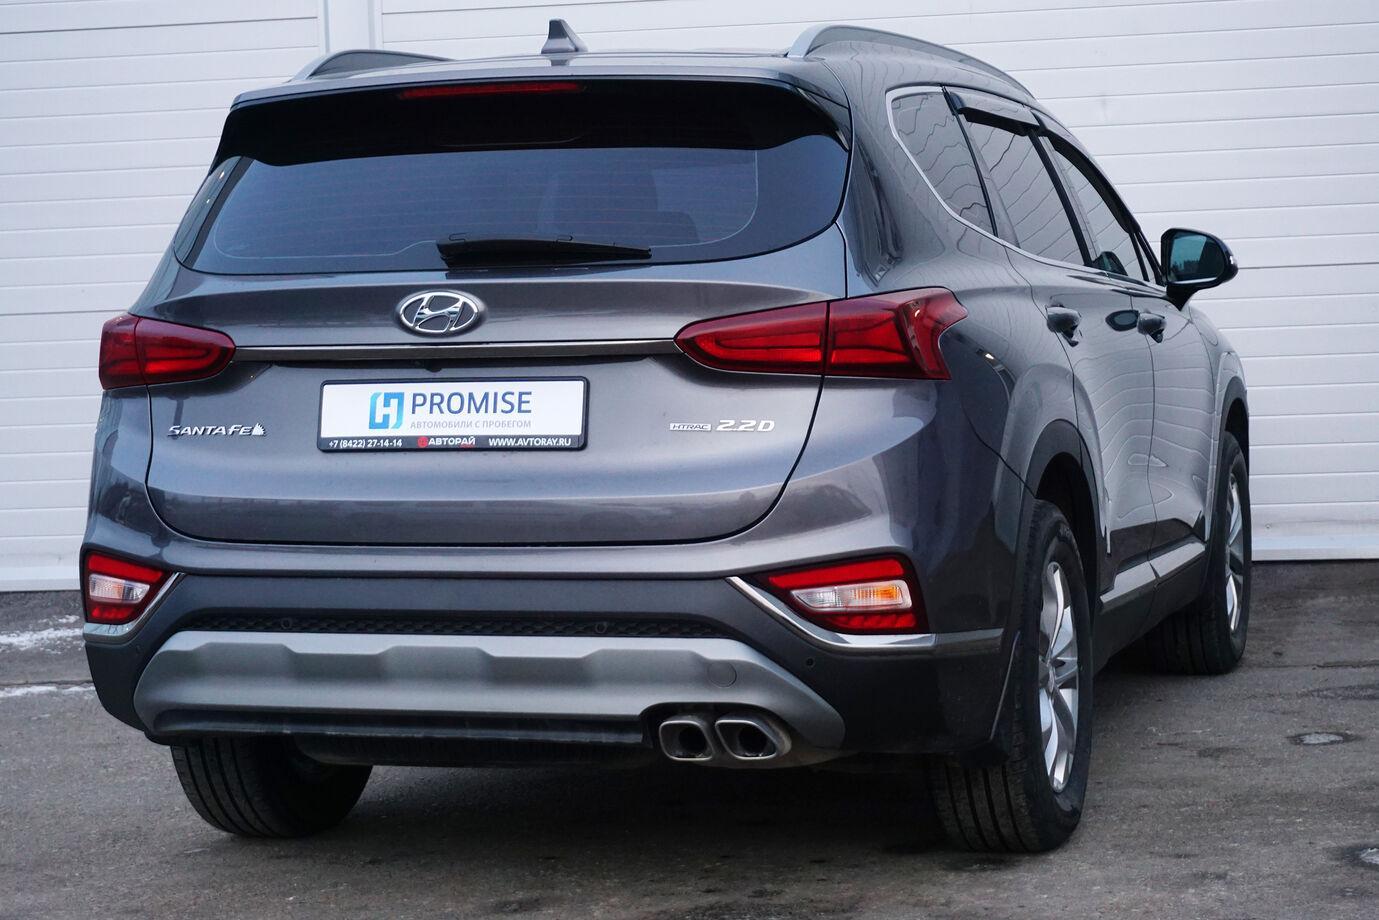 Hyundai Santa Fe, IV 2019г.